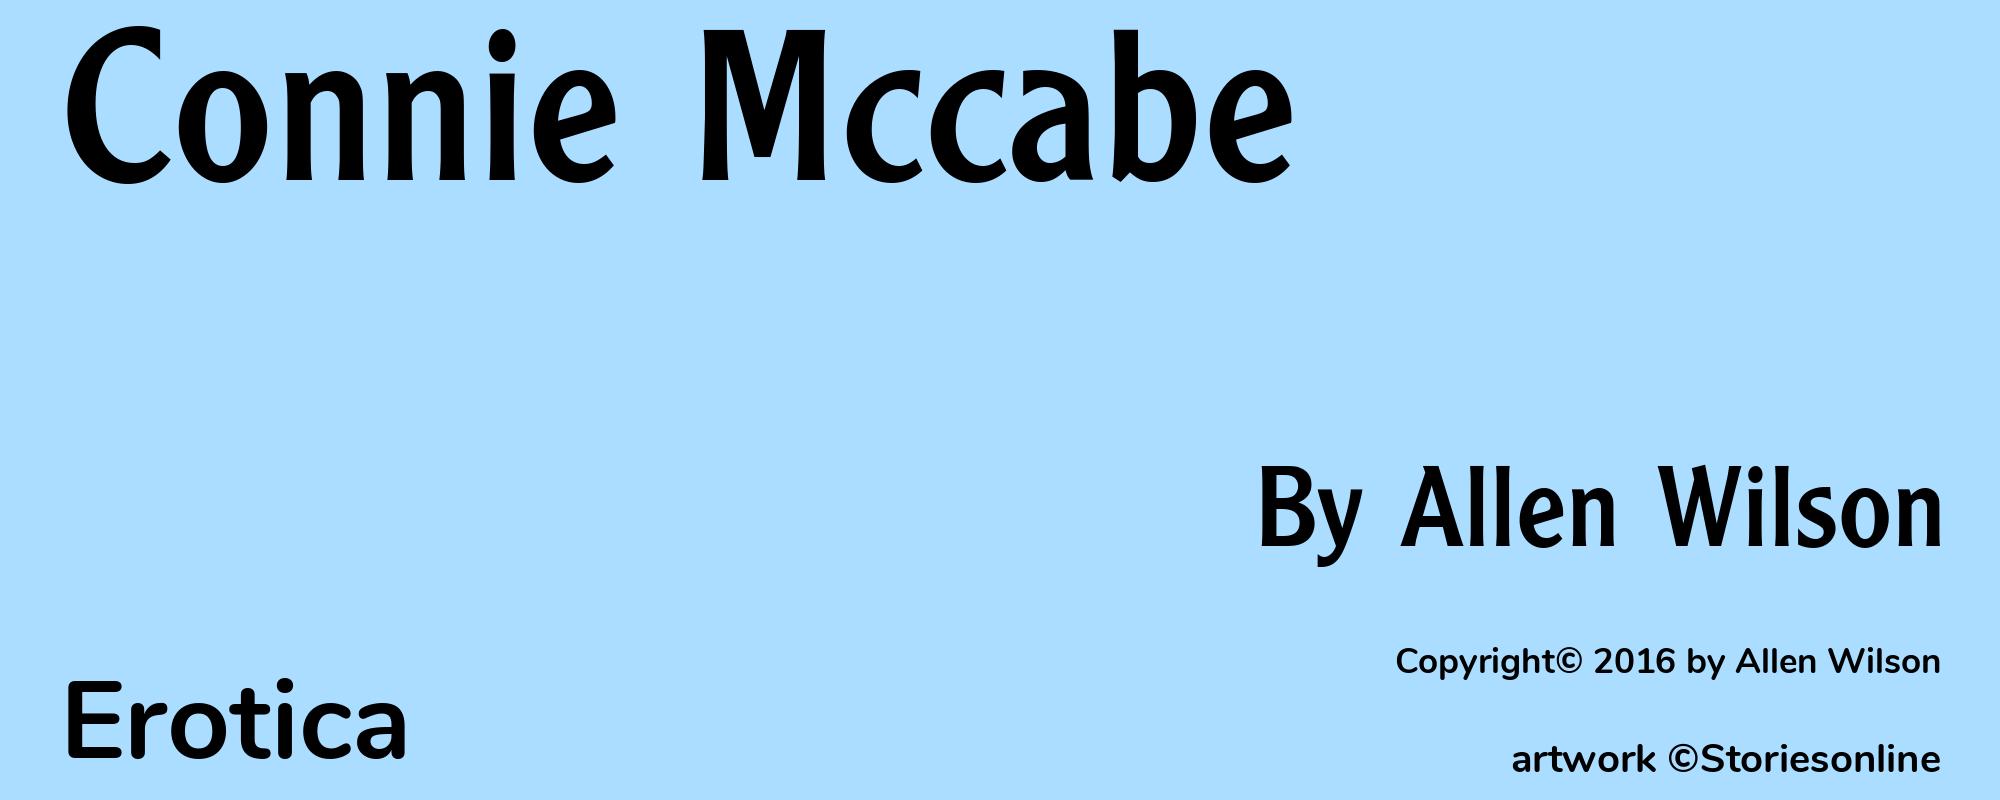 Connie Mccabe - Cover